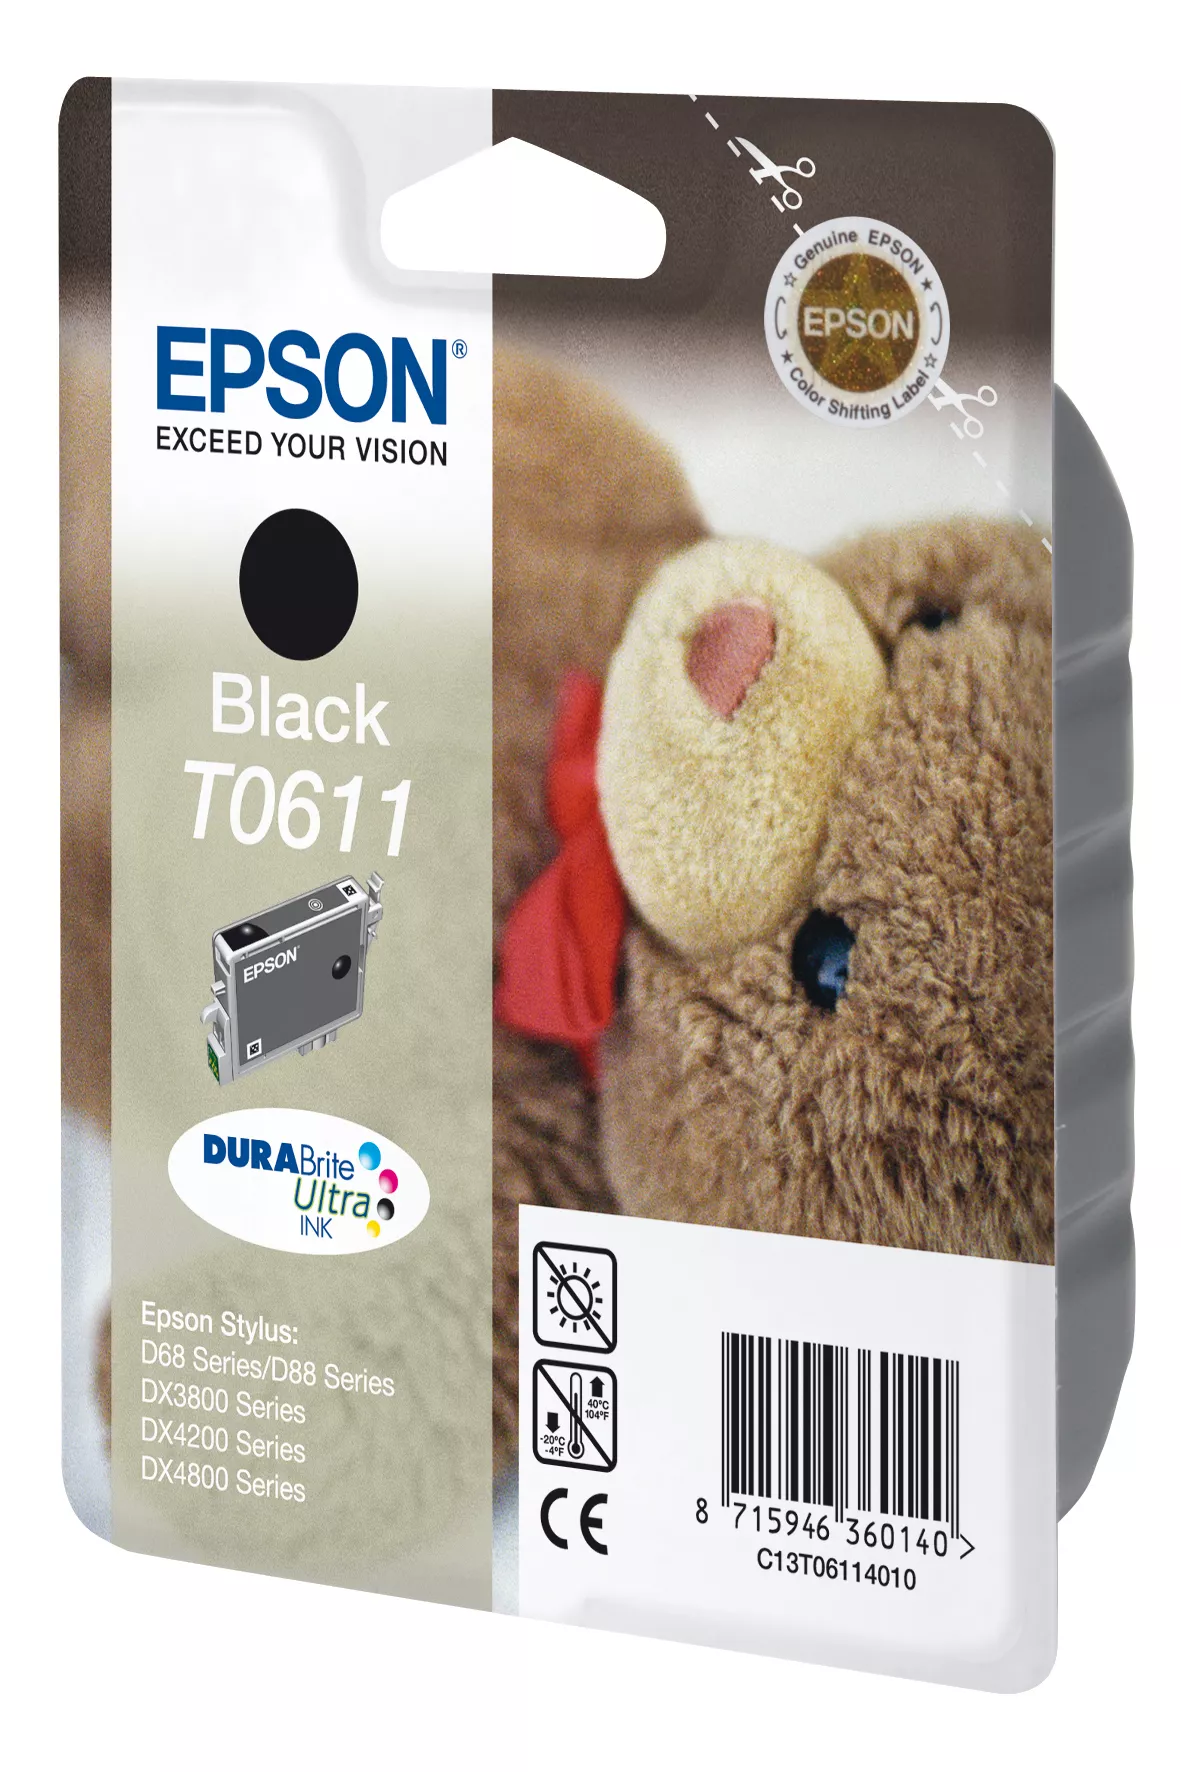 Achat EPSON T0611 cartouche d encre noir capacité standard sur hello RSE - visuel 3